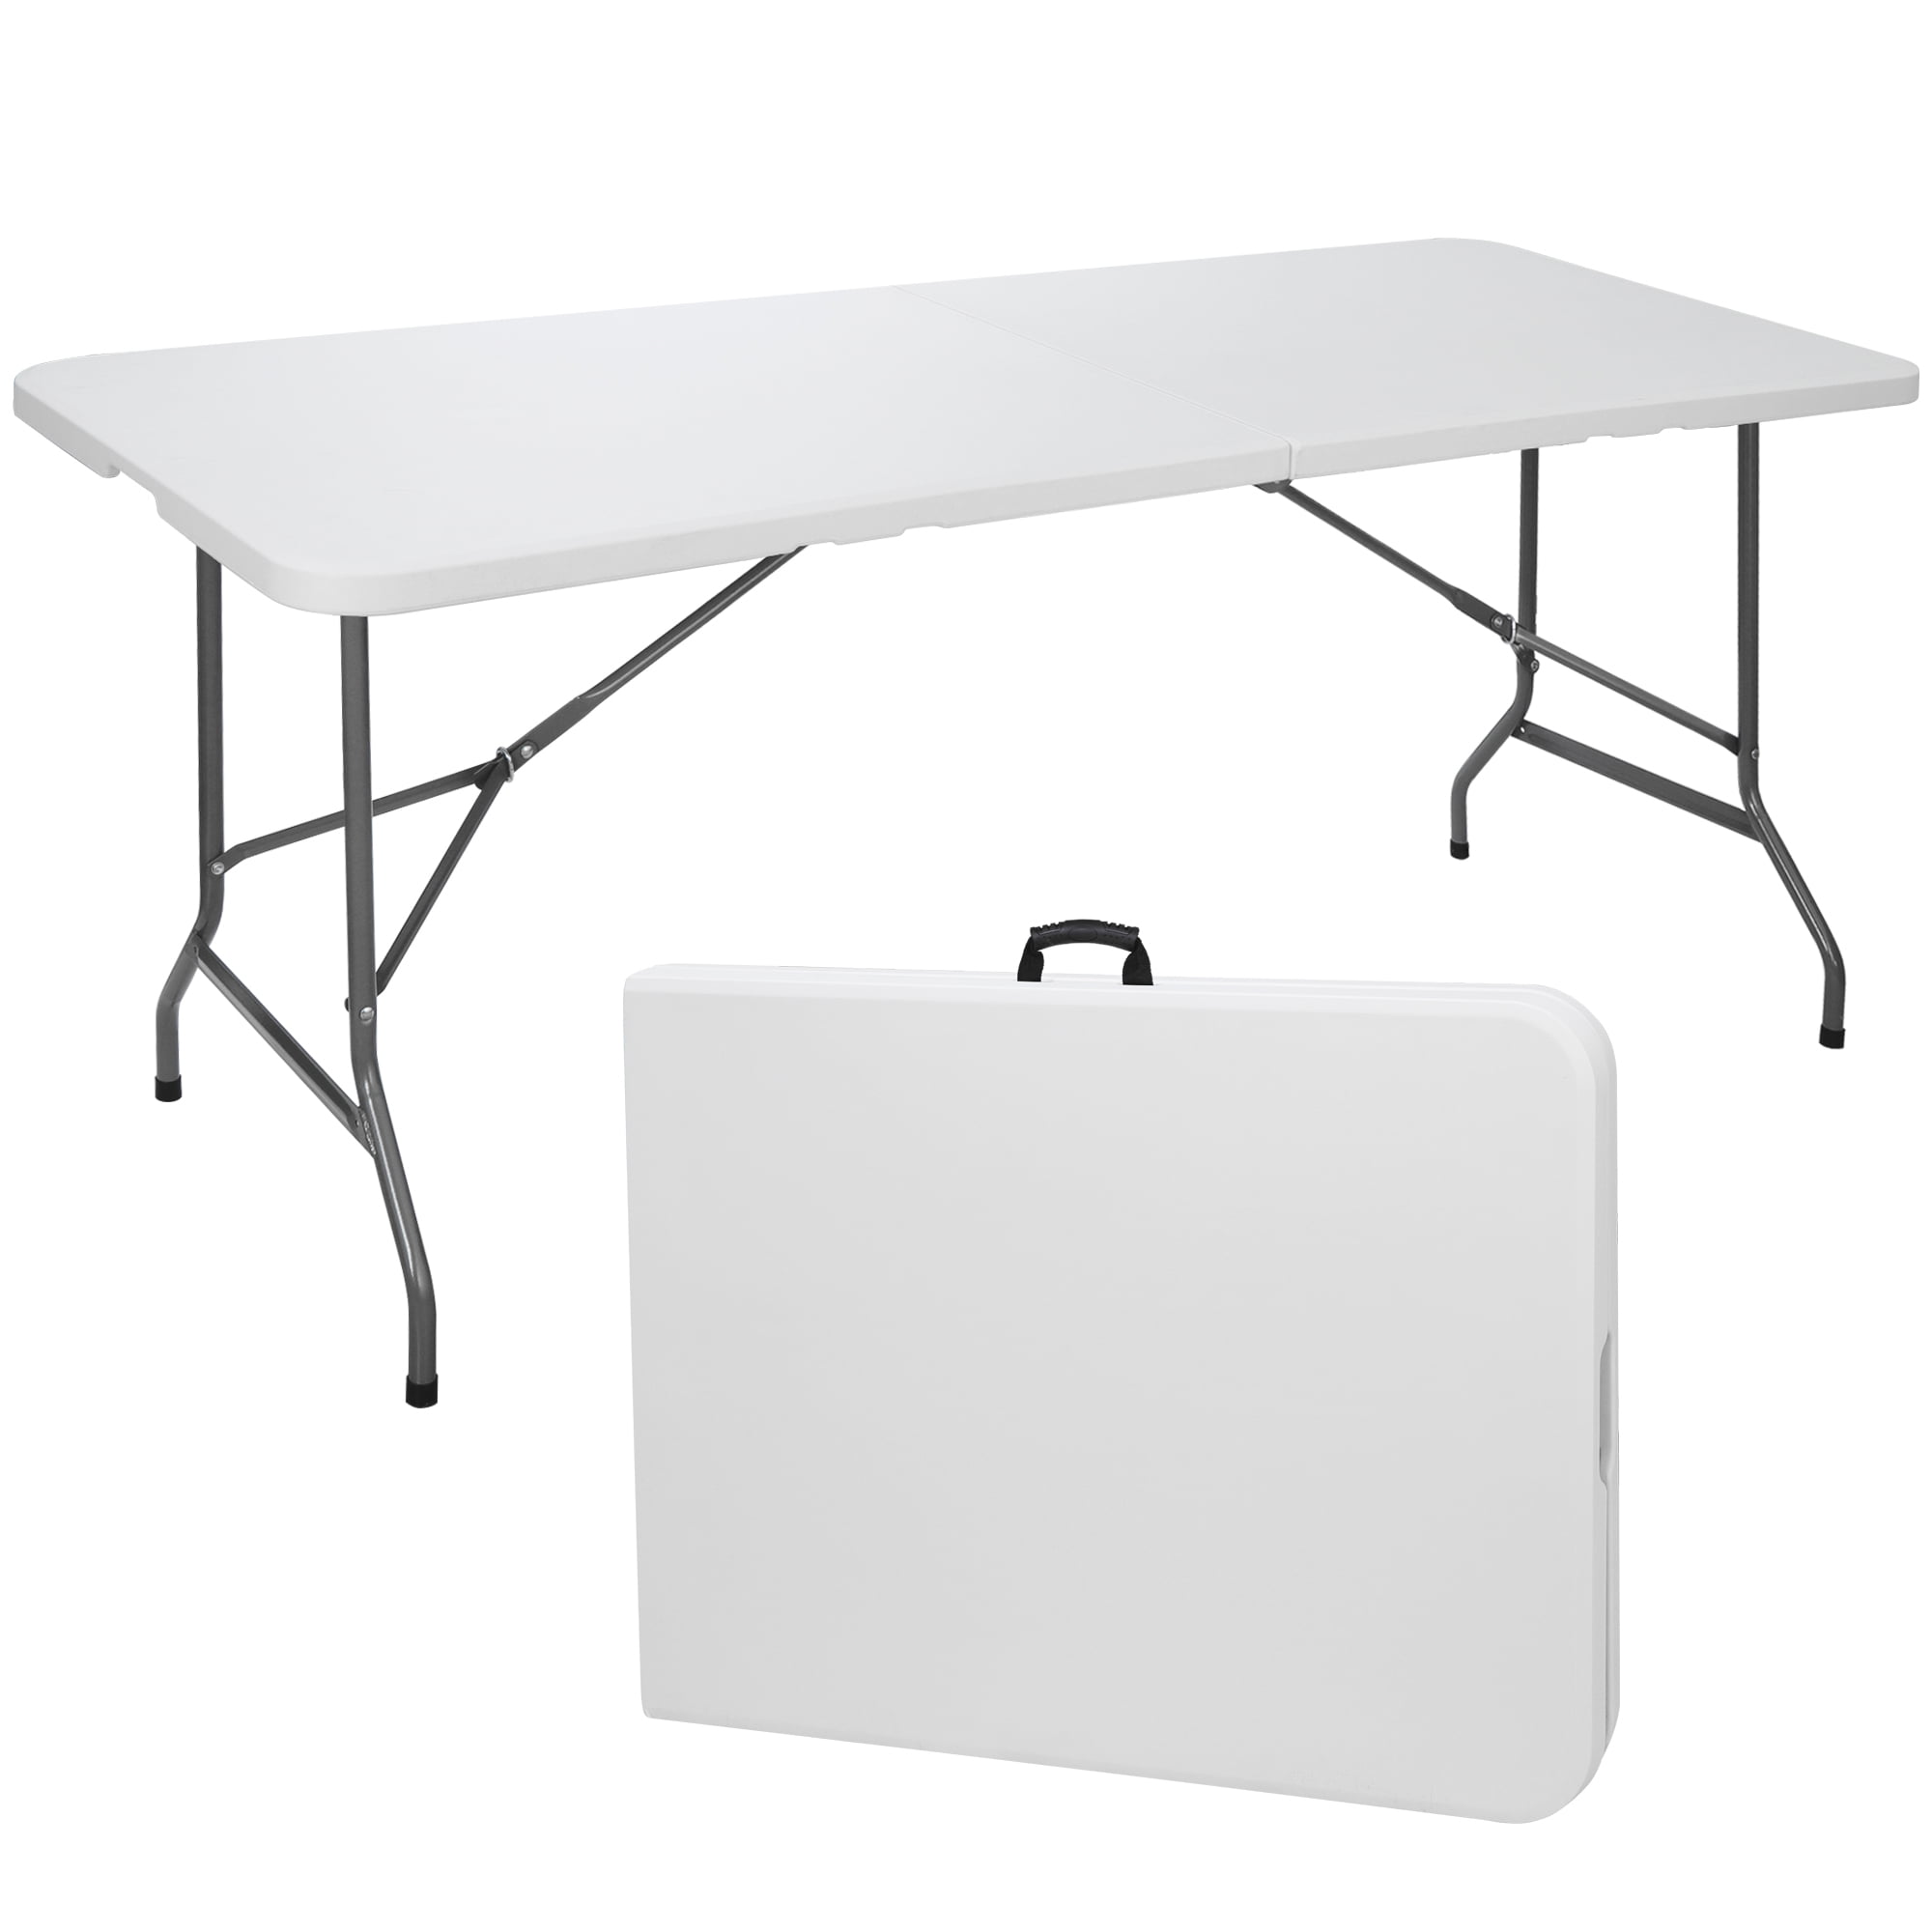 4FT  Folding Table Portable Aluminium Camping Garden Party Trestle Caravan Table